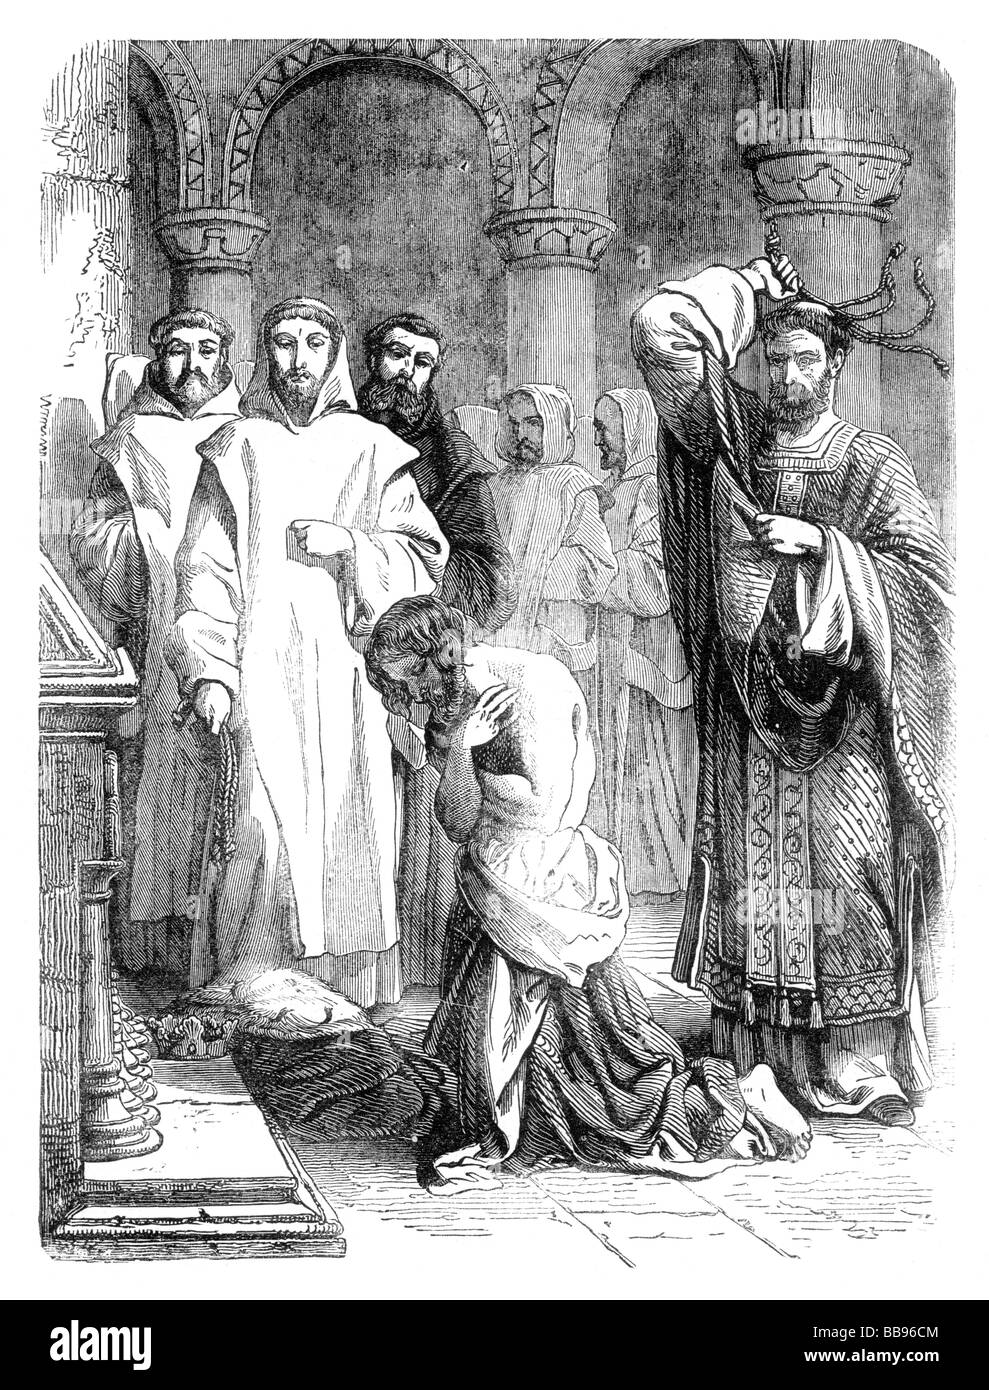 El rey Enrique II a hacer penitencia por el asesinato de Thomas Becket en la tumba de santo Tomás Becket Catedral de Canterbury Foto de stock